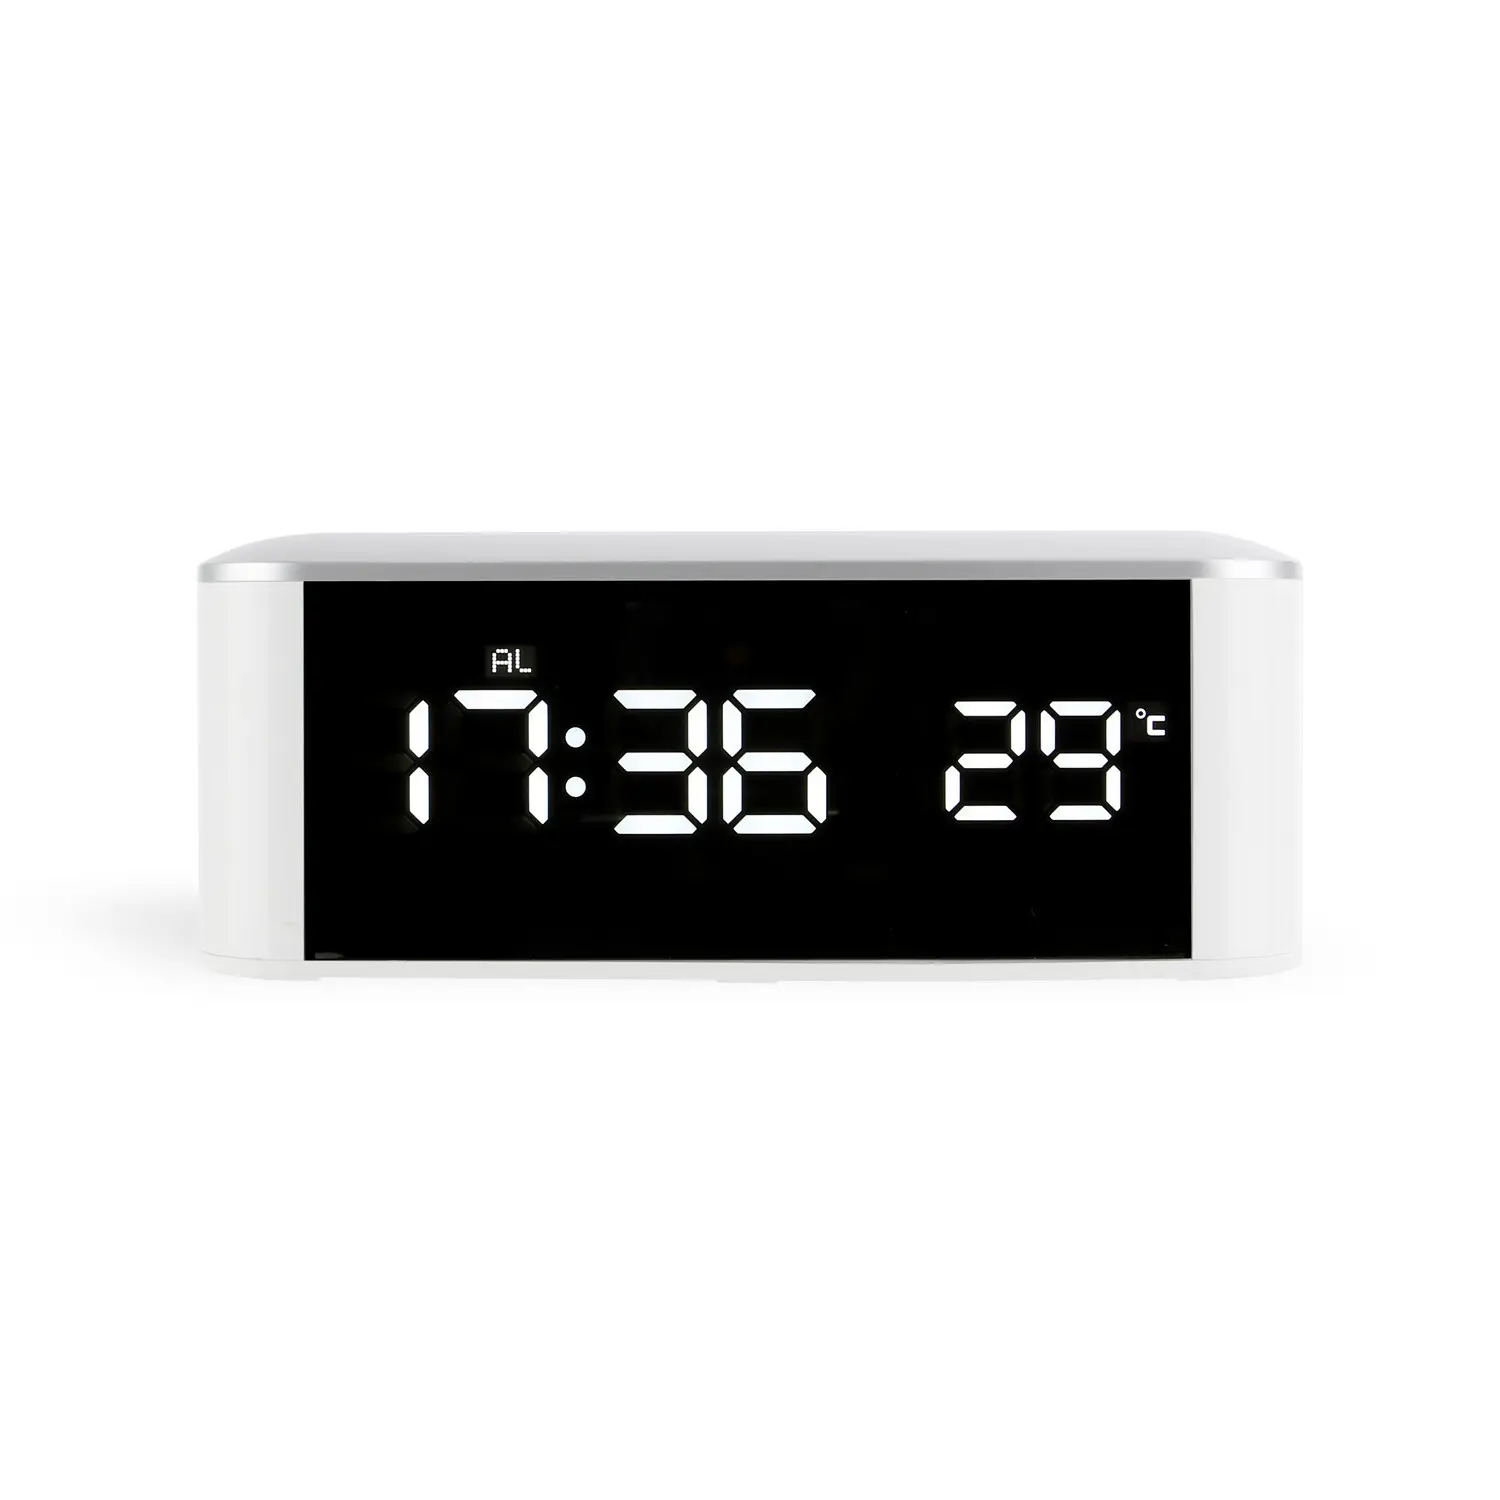 Домашний термометр с интерфейсом USB будильник светодиодный электронный дисплей термометр